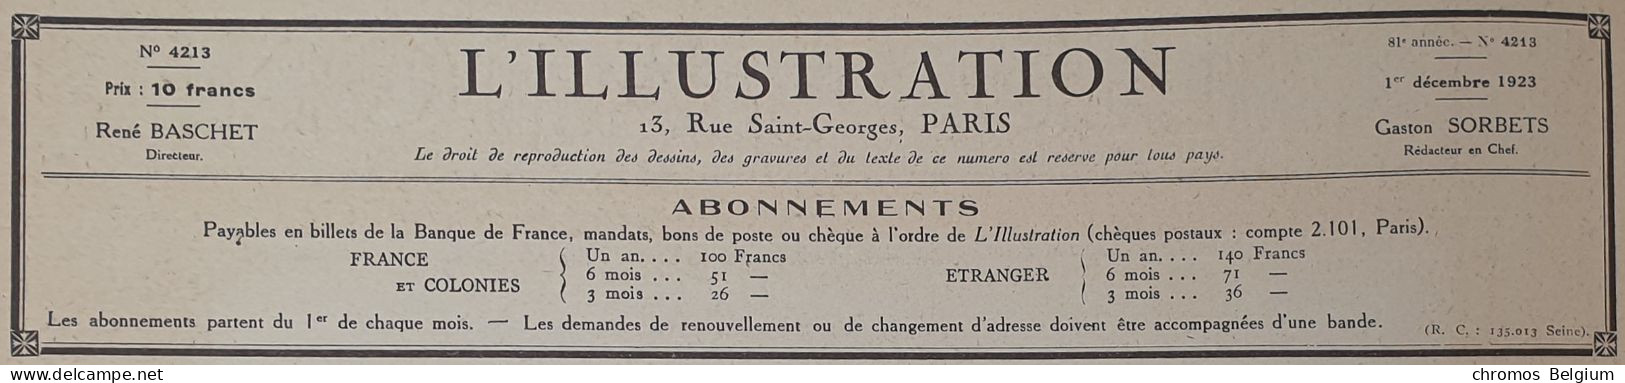 Vintage Reclame Advertentie DFP  Affiche Publicitaire  1923   Doriot, Flandrin & Parant - Werbung